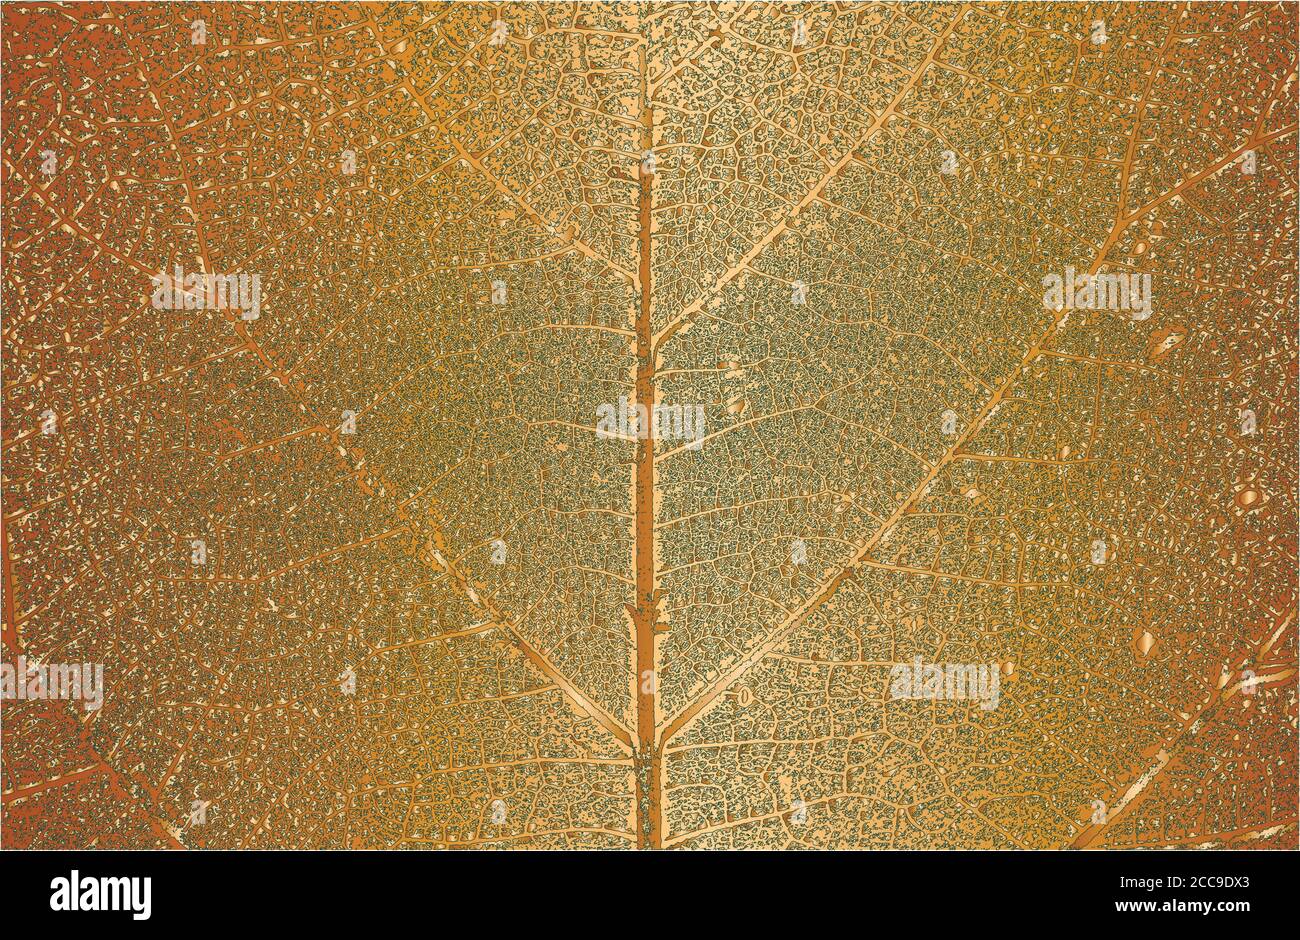 Distress Baum Blätter, Flugblatt Textur auf goldenem Hintergrund. Schwarz-weiß Grunge Hintergrund. EPS8 Vektorgrafik. Stock Vektor